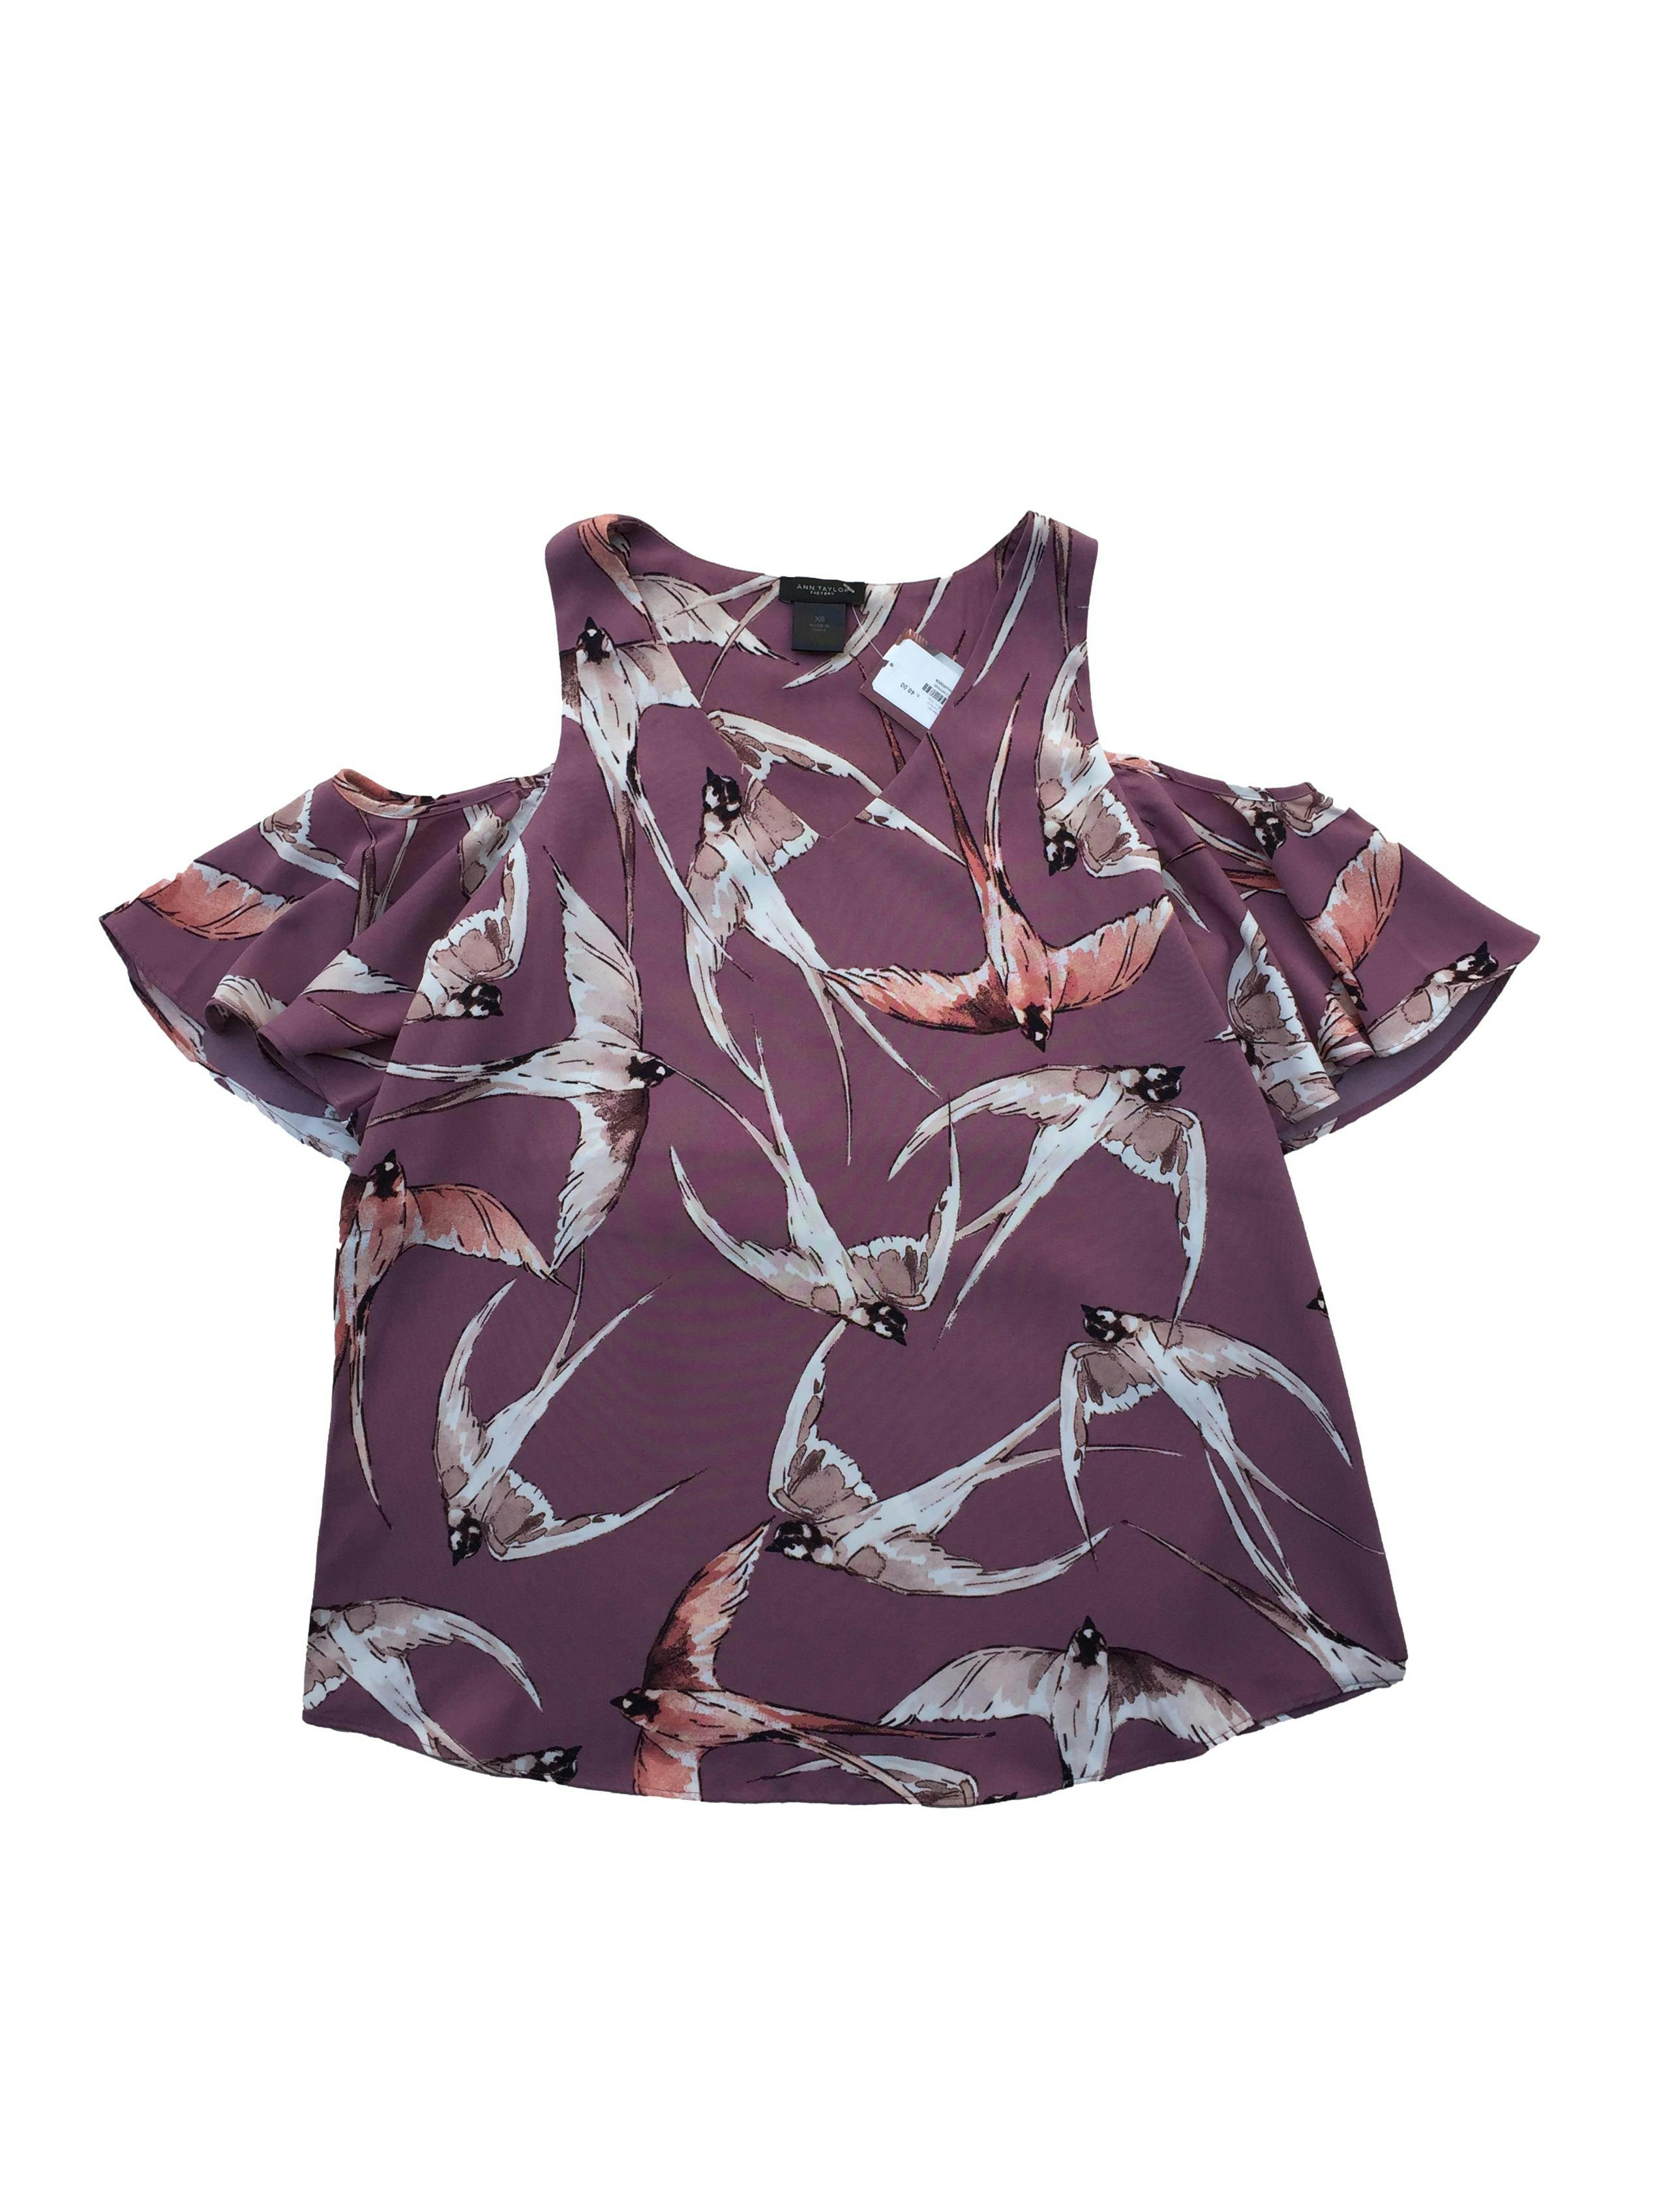 Blusa Ann Taylor rosa con estampado de aves, hombros descubiertos. Busto: 92cm, Largo: 66cm